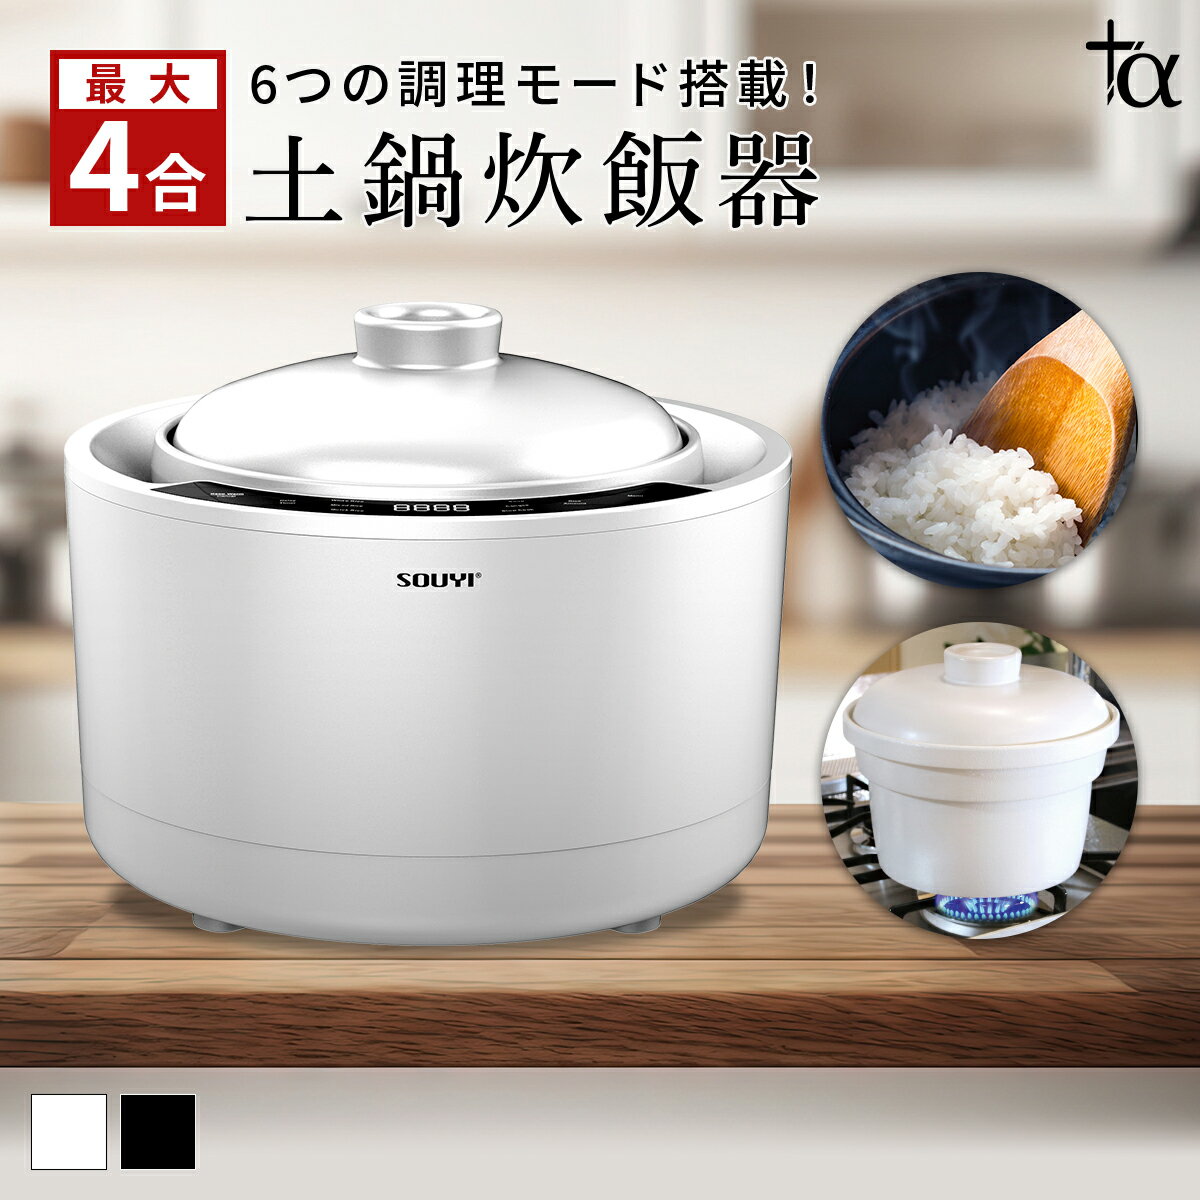 土鍋炊飯器 SY-150 炊飯 炊飯器 ご飯 